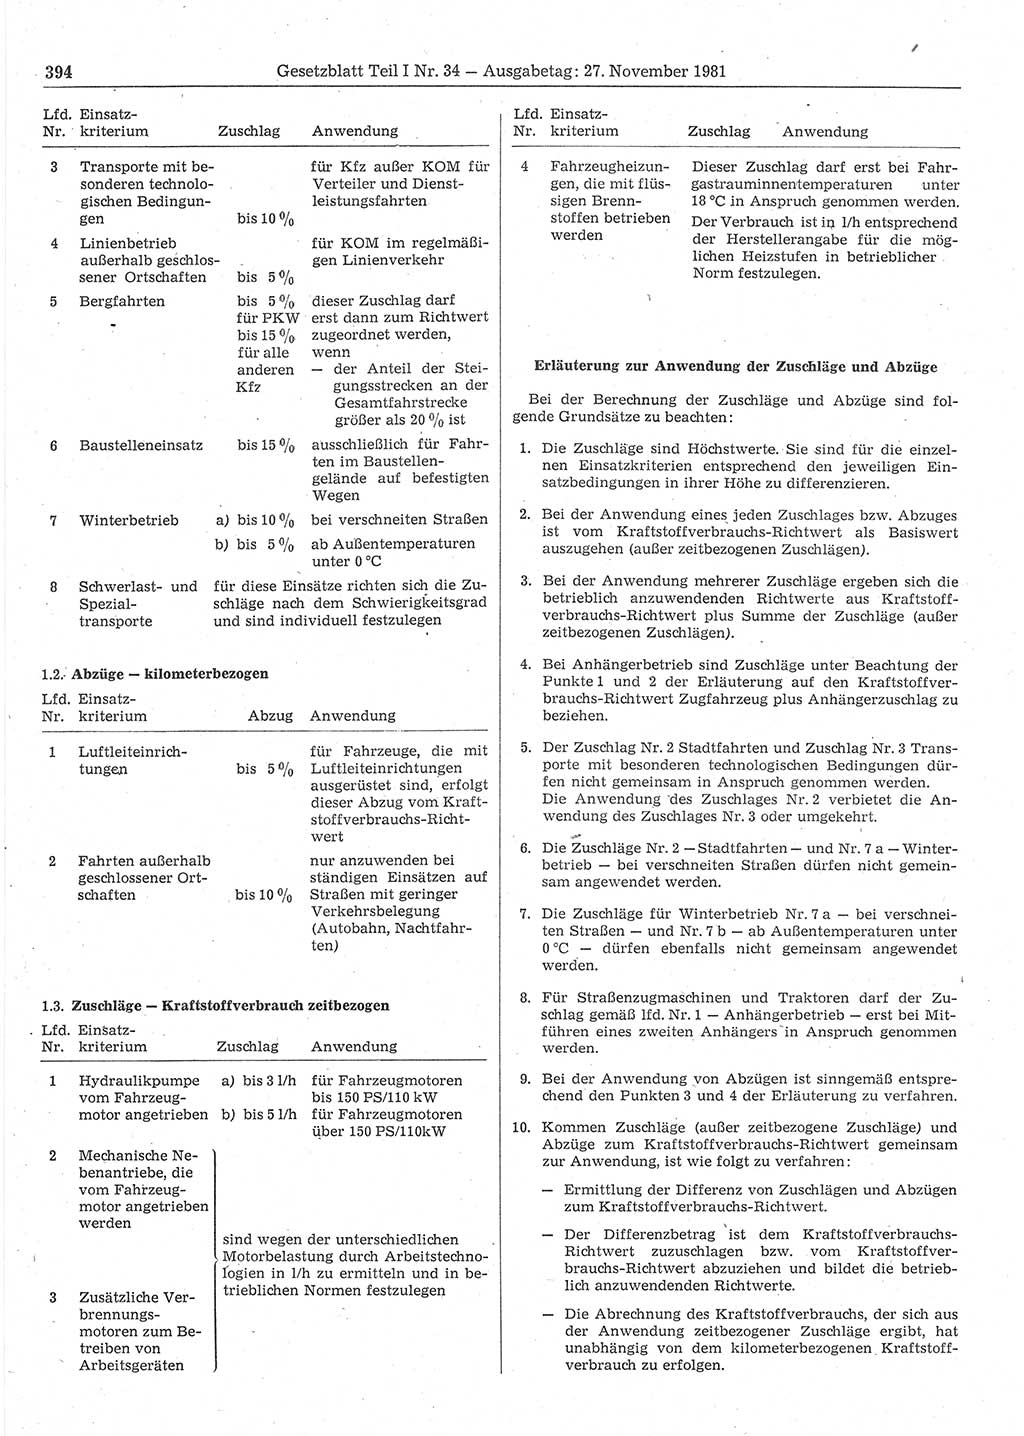 Gesetzblatt (GBl.) der Deutschen Demokratischen Republik (DDR) Teil Ⅰ 1981, Seite 394 (GBl. DDR Ⅰ 1981, S. 394)